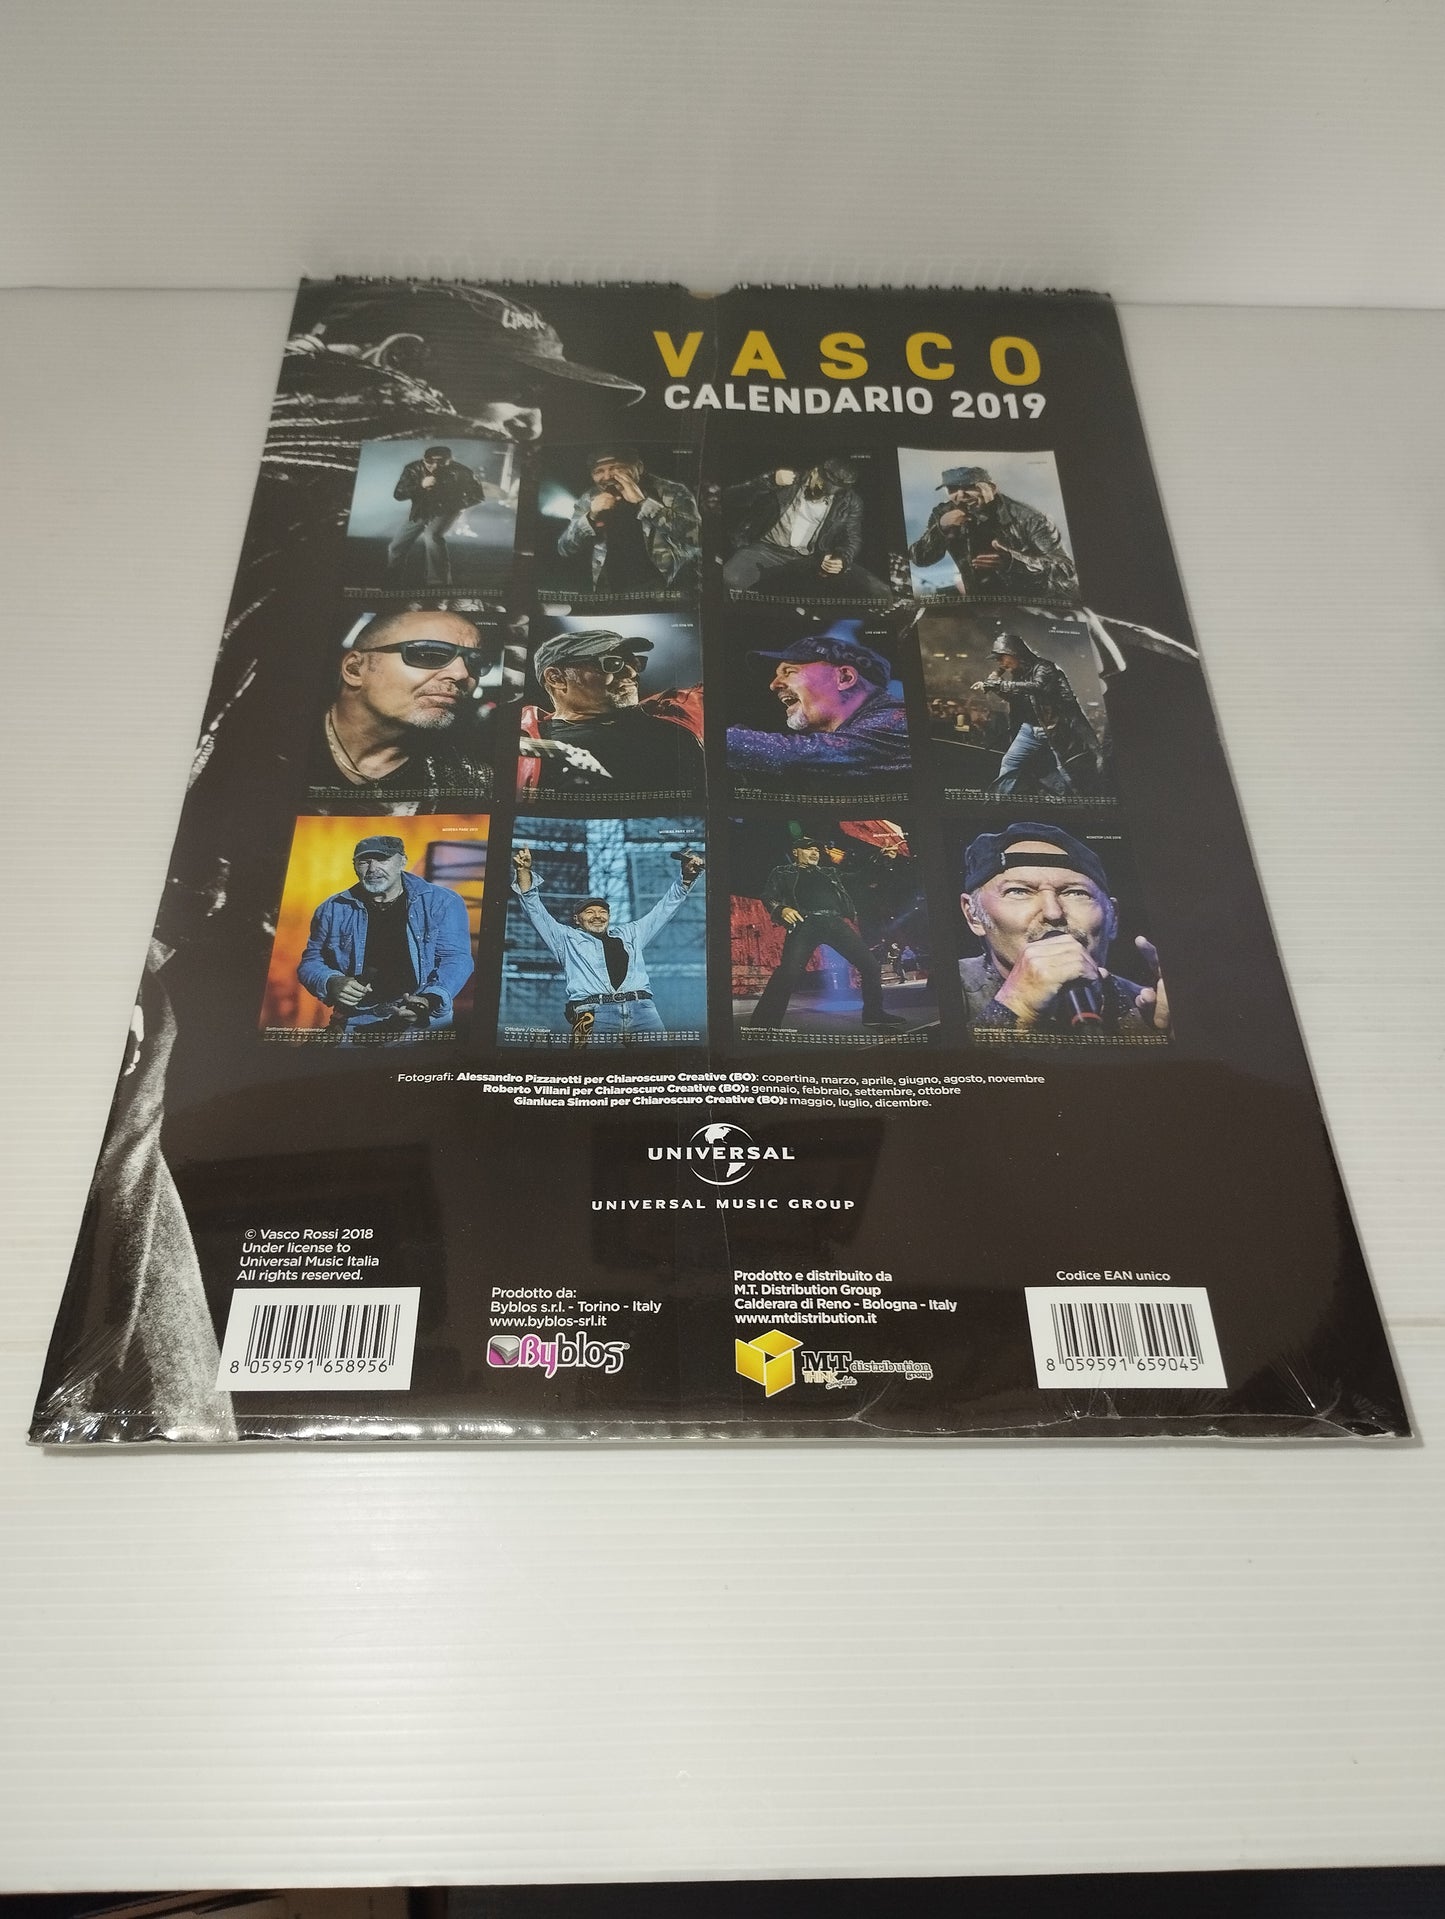 Vasco Calendario 2019 Vasco Rossi
Universal/Byblos
Dimensioni calendario 42x29 cm circa